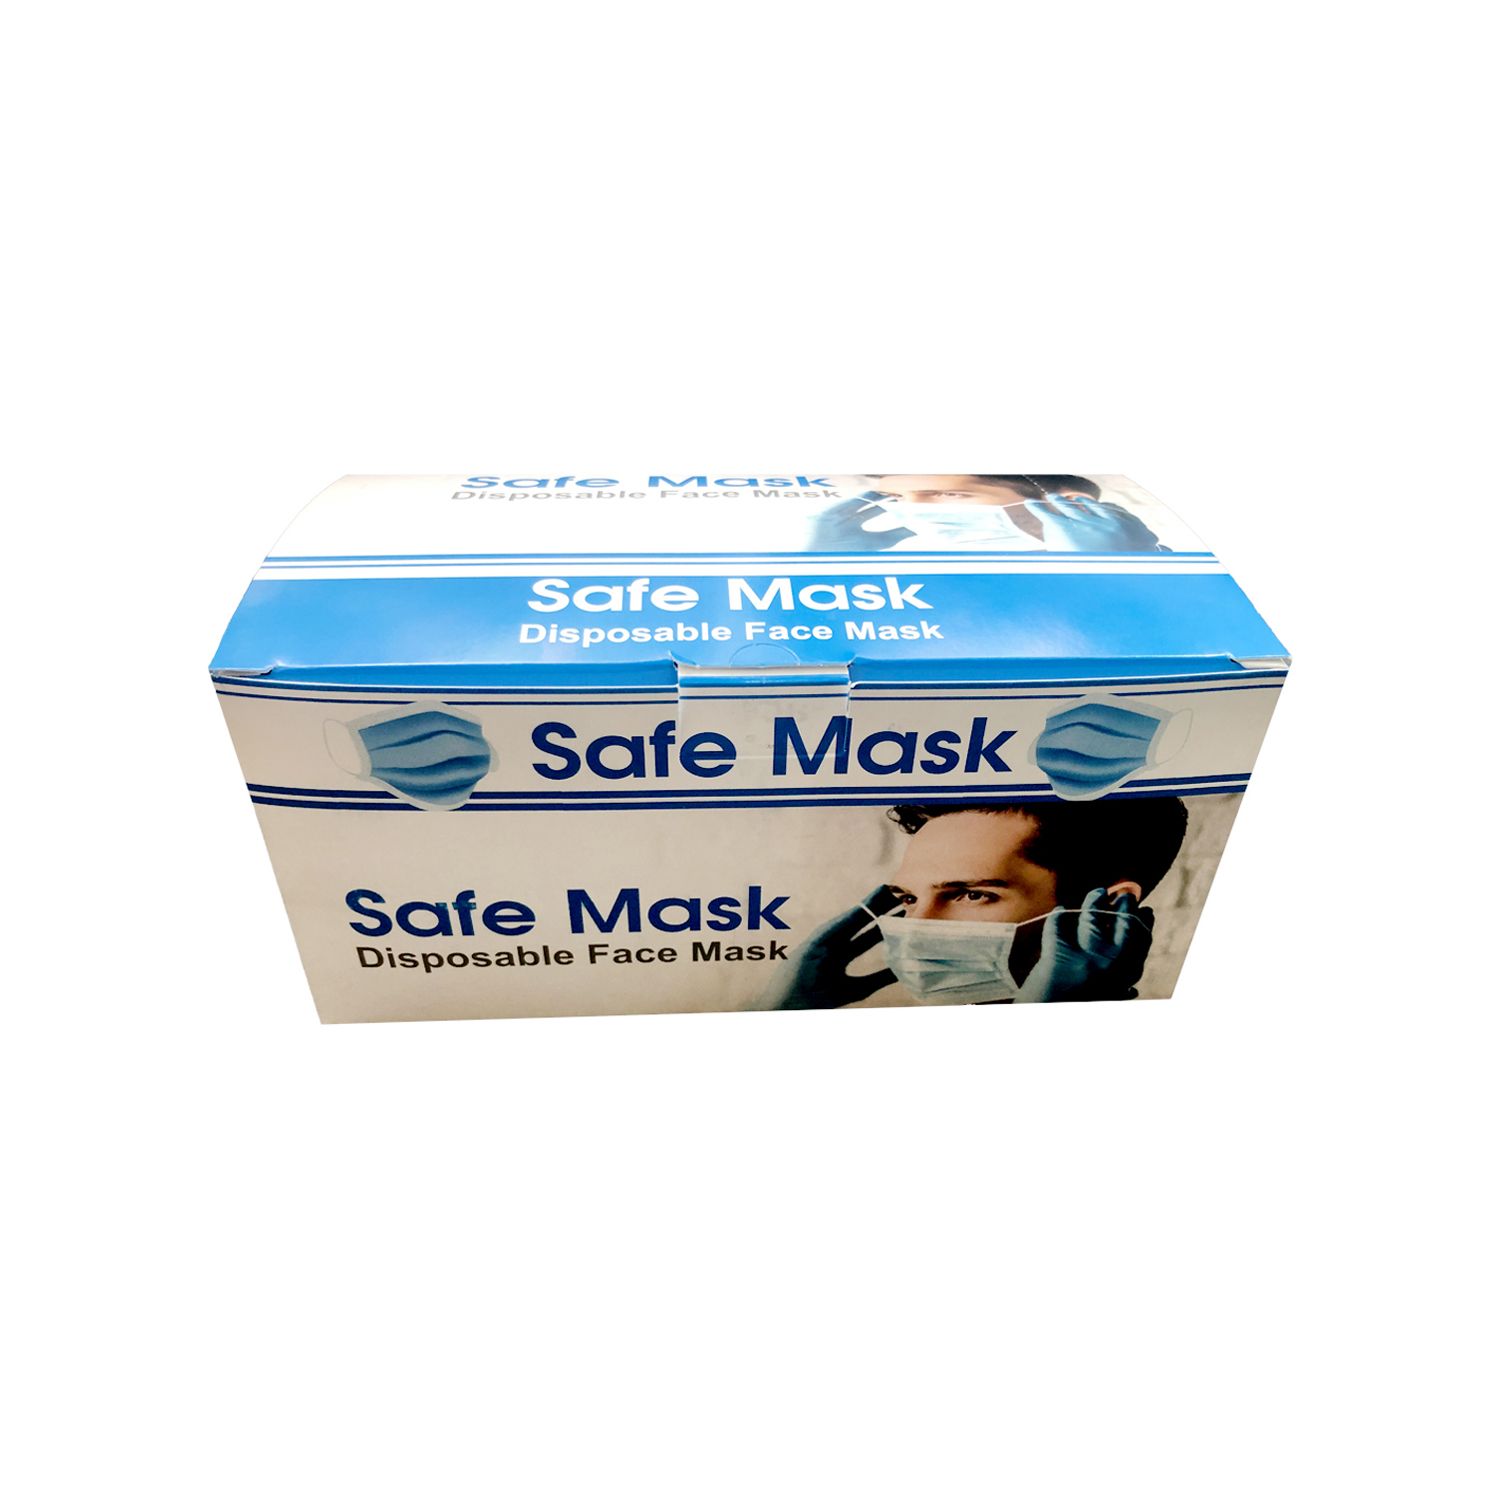 ماسک پزشکی سه لایه سیف ماسک بسته 50 عددی - سفید